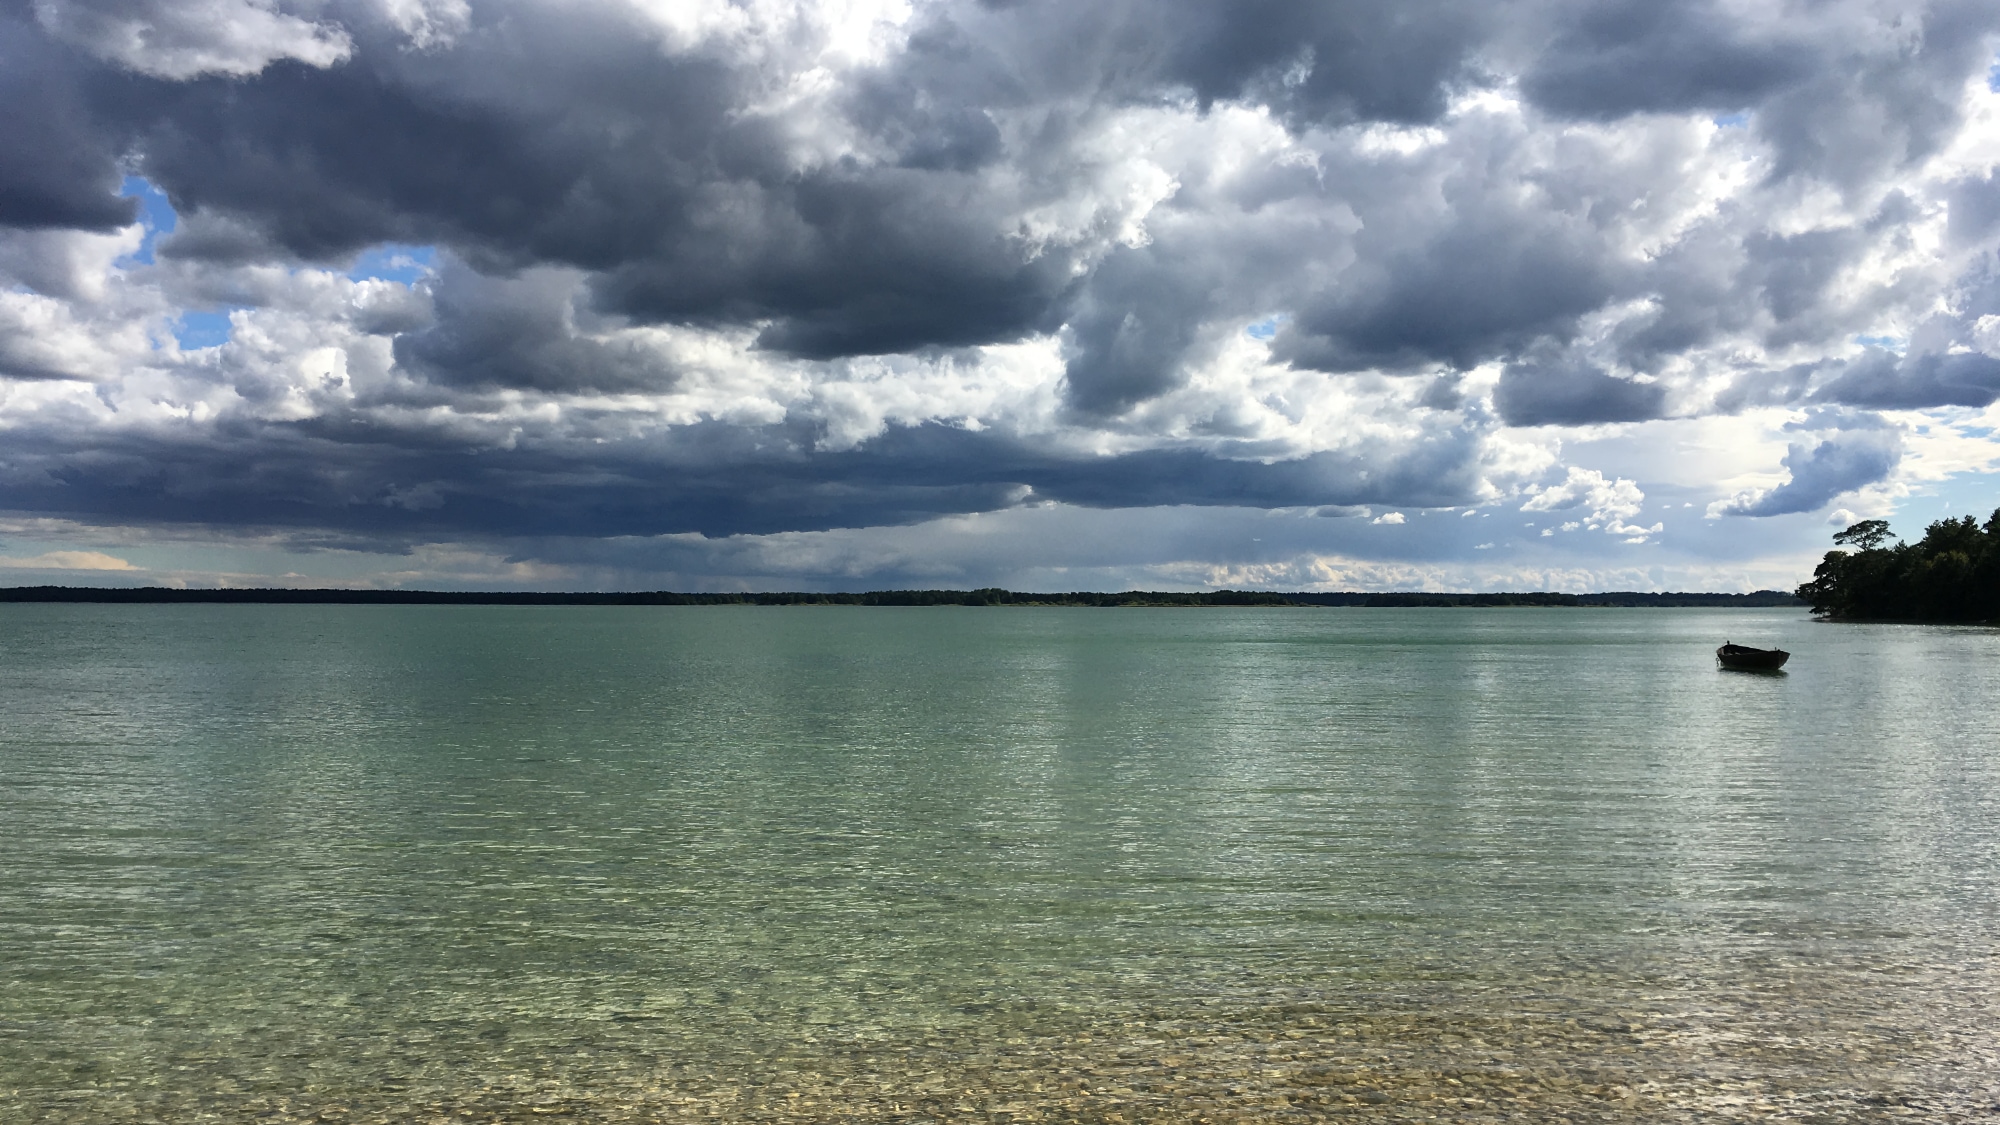 A photo taken at the lake Bästeträsk on Gotland.